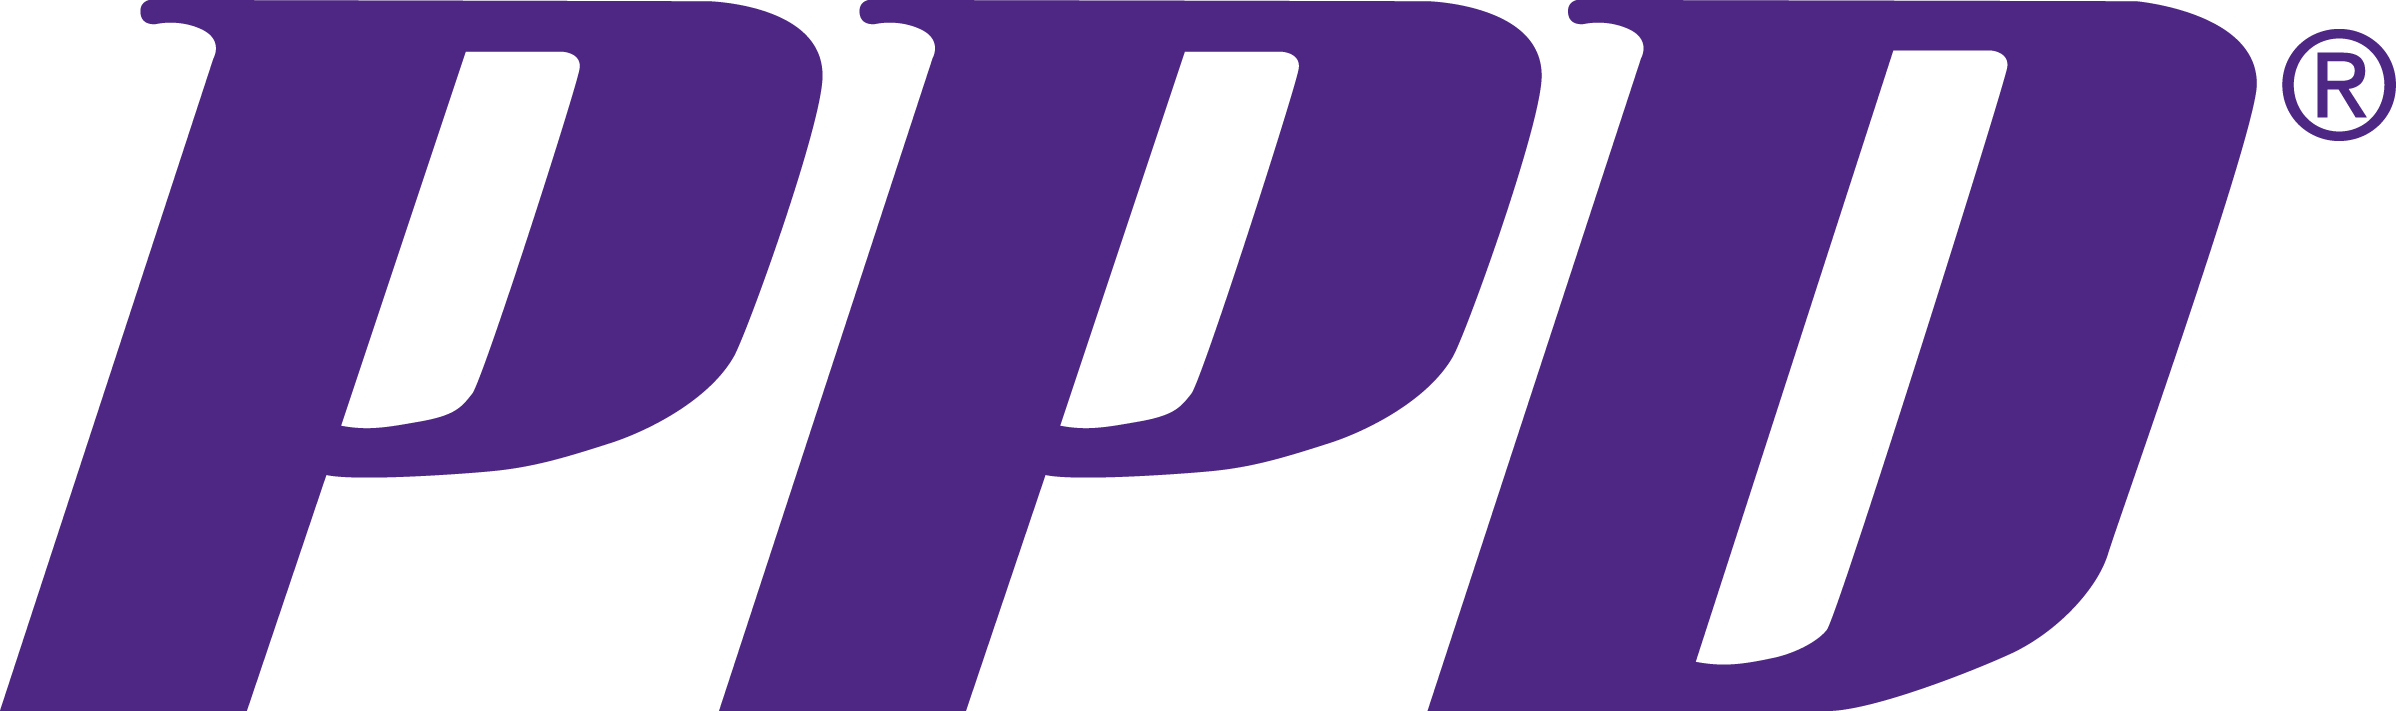 PPD Logo - PPD Logo PMS 268 - The Aerosol Society